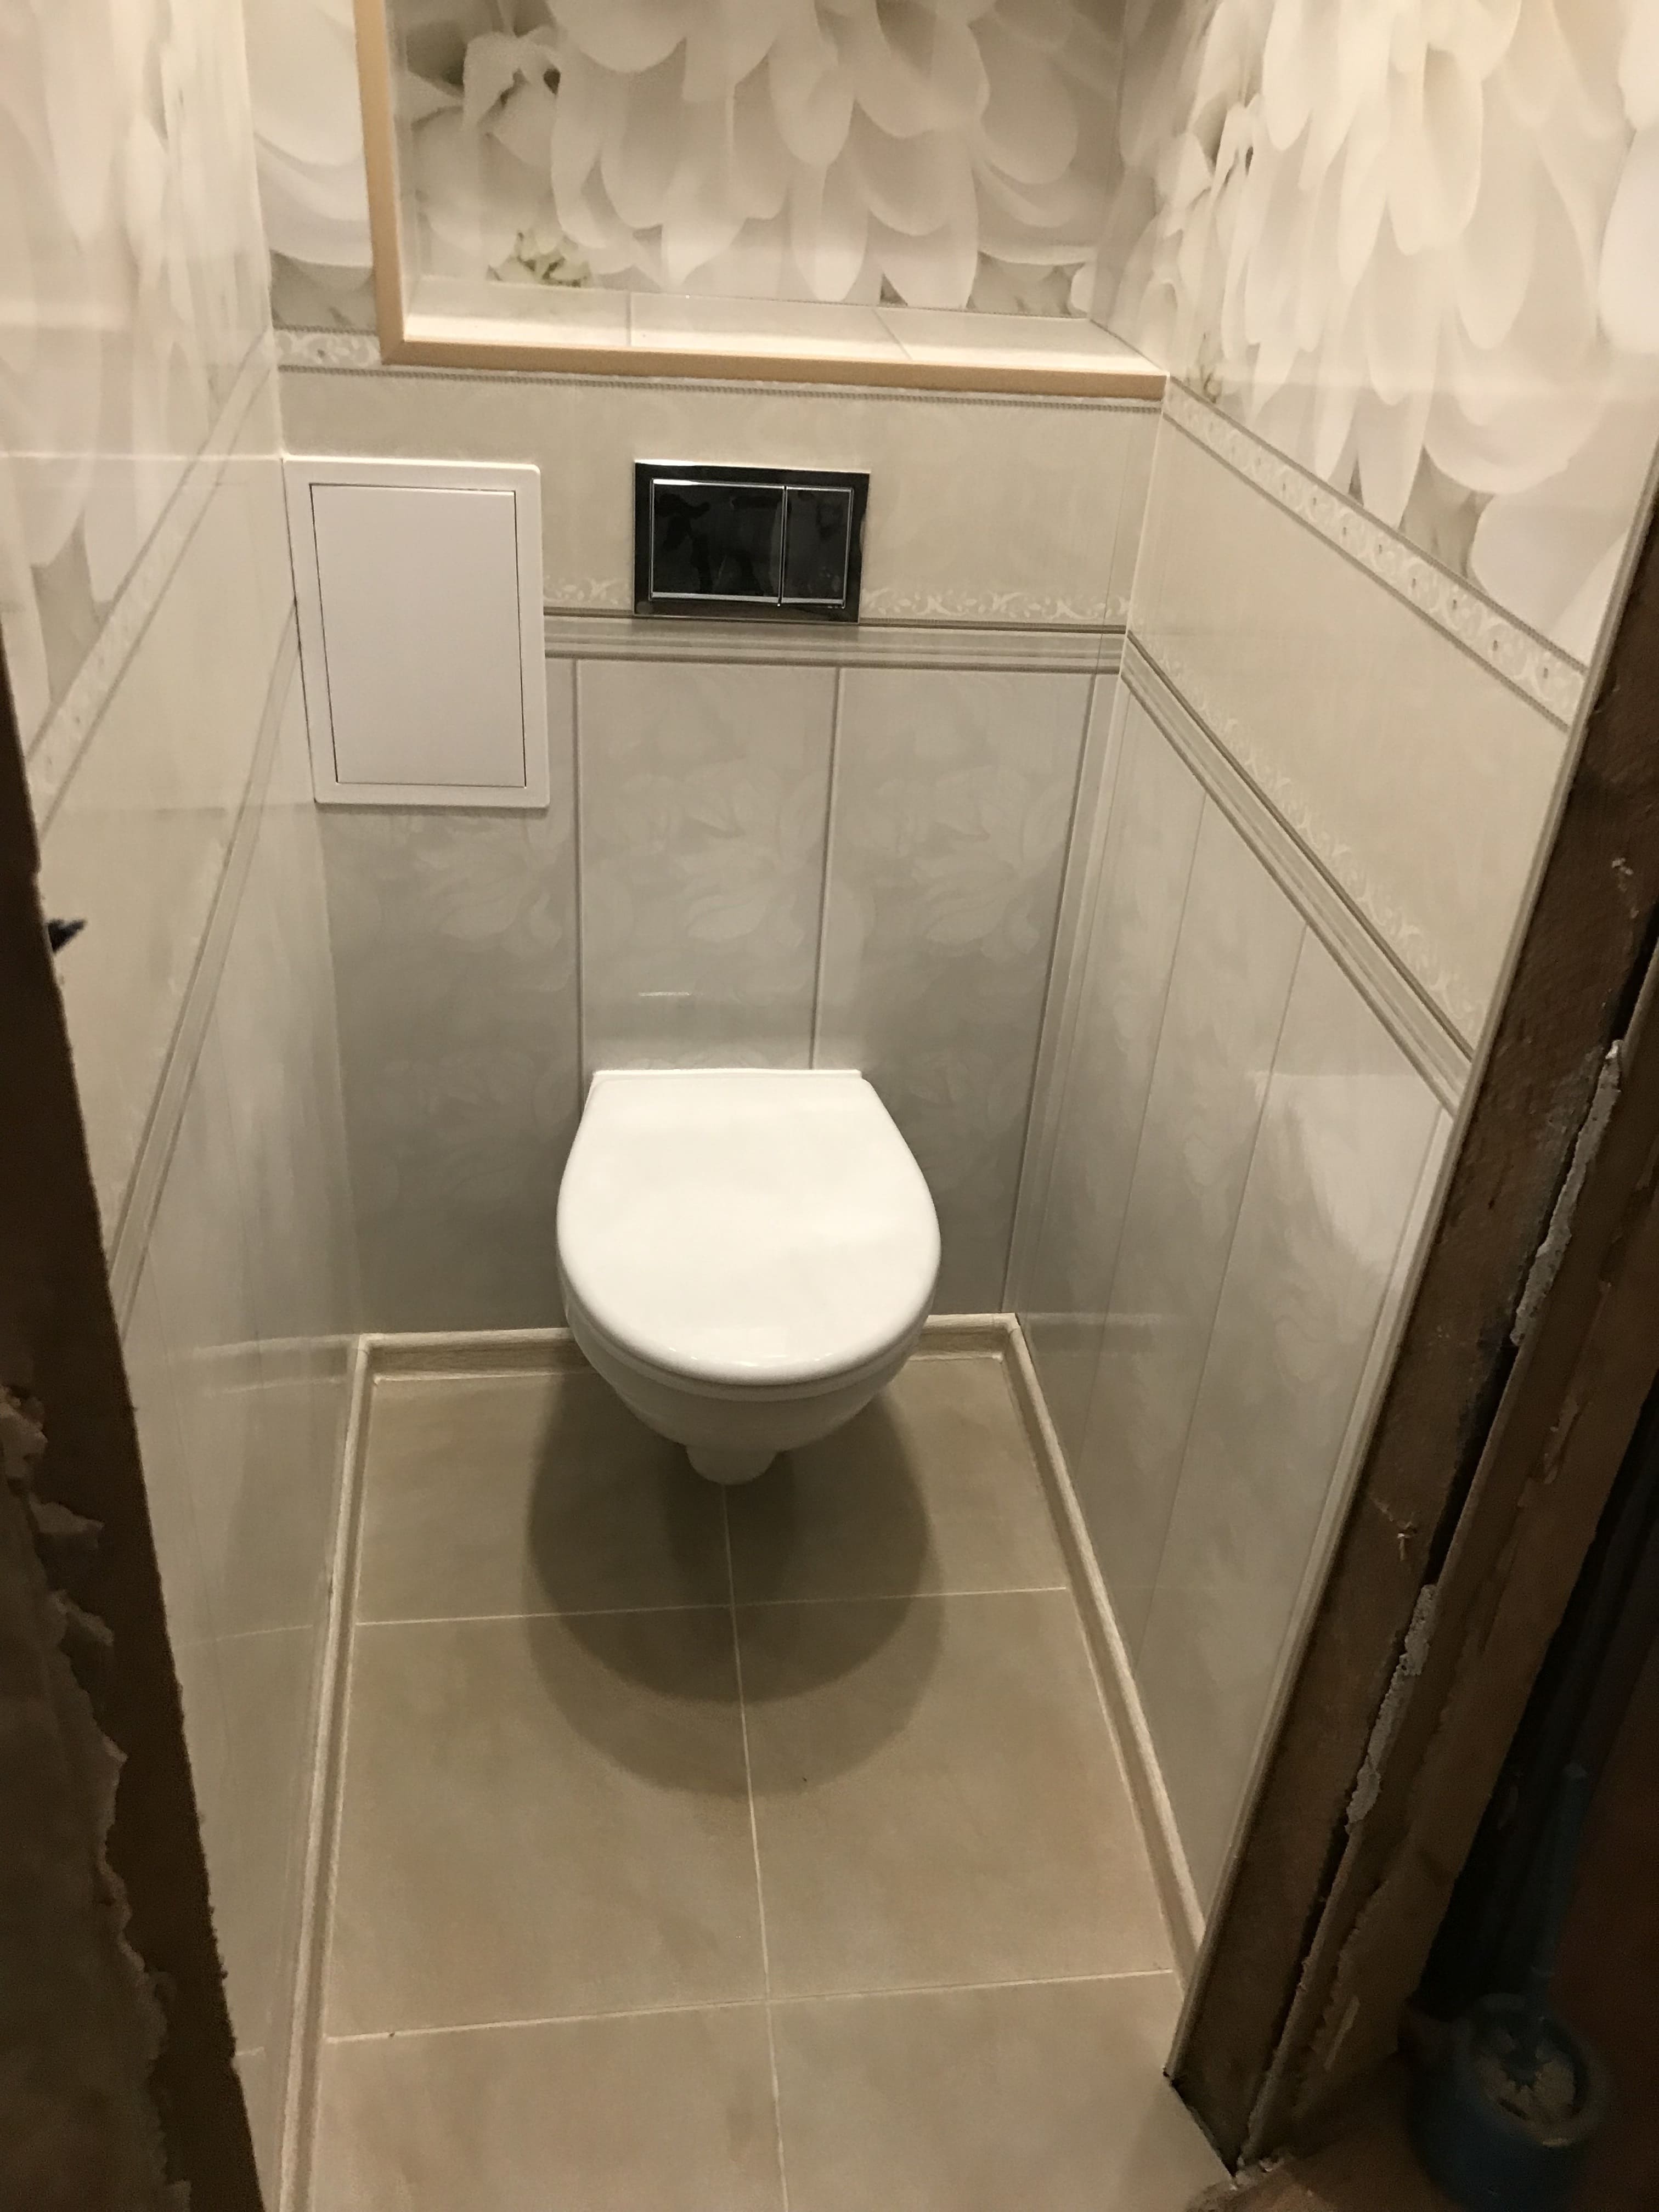 Ремонт туалета, стоимость 50 000 рублей – фото после проведения работ